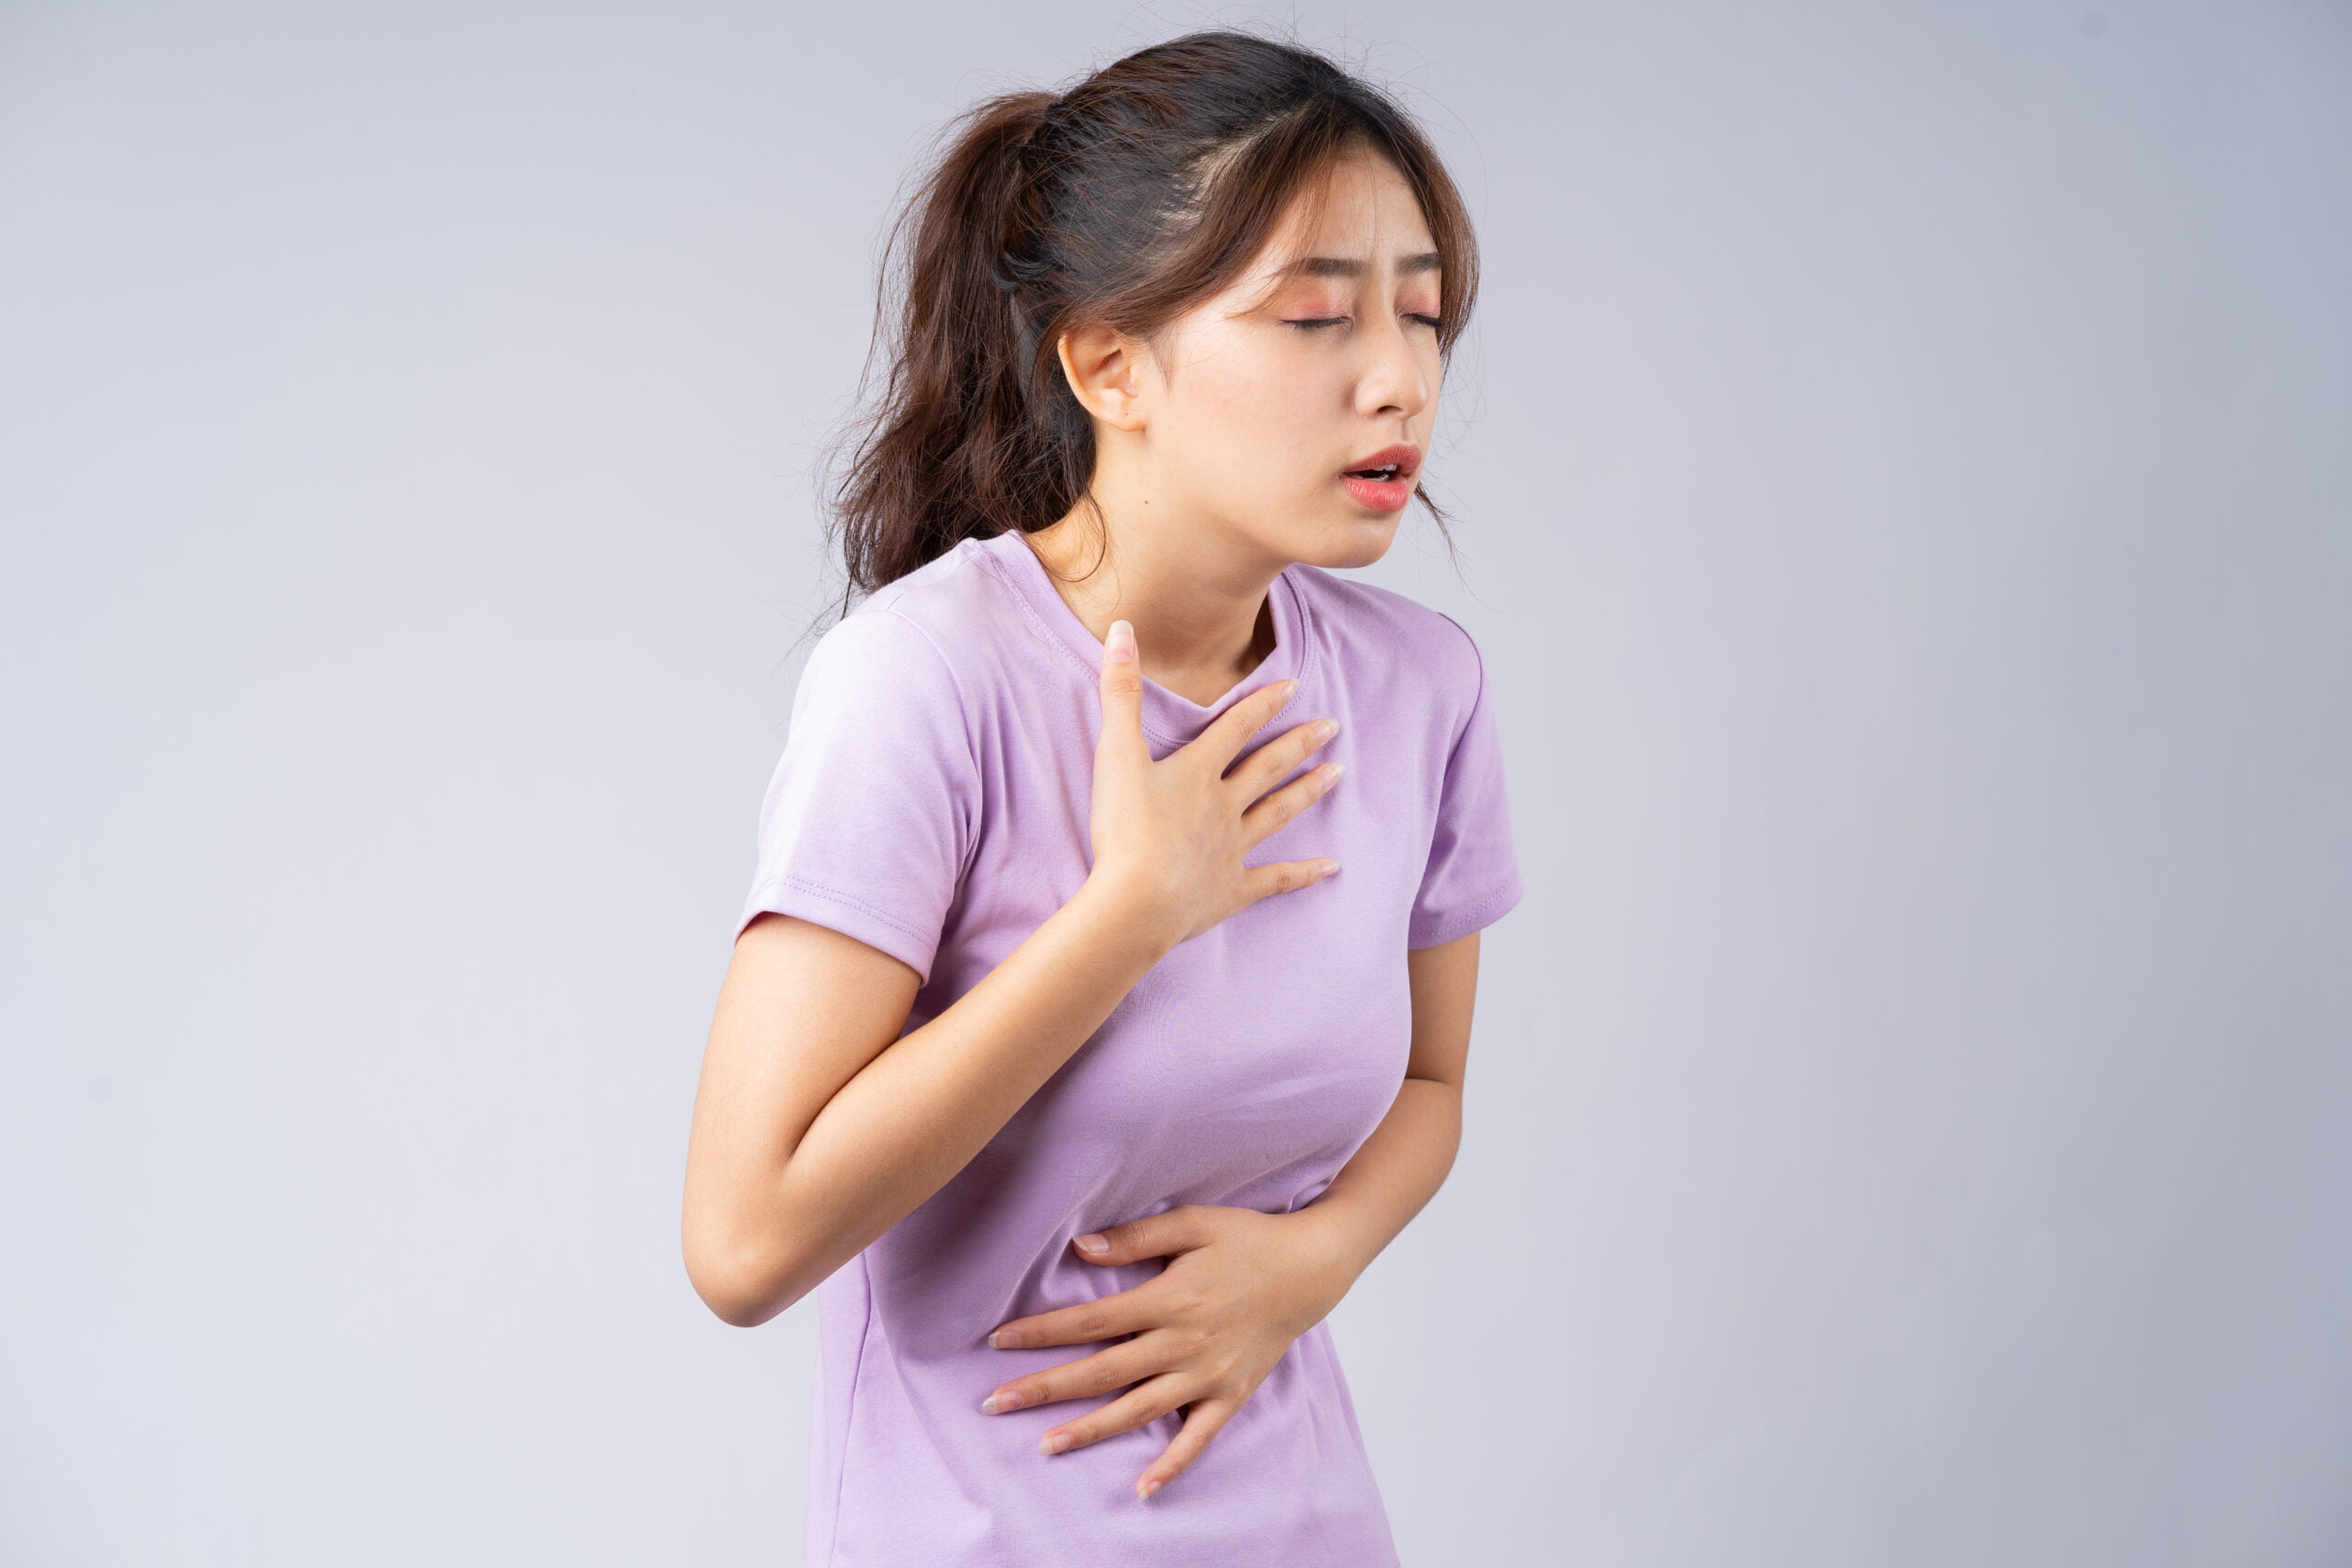 โรค กรดไหลย้อน - gastroesophageal reflux disease